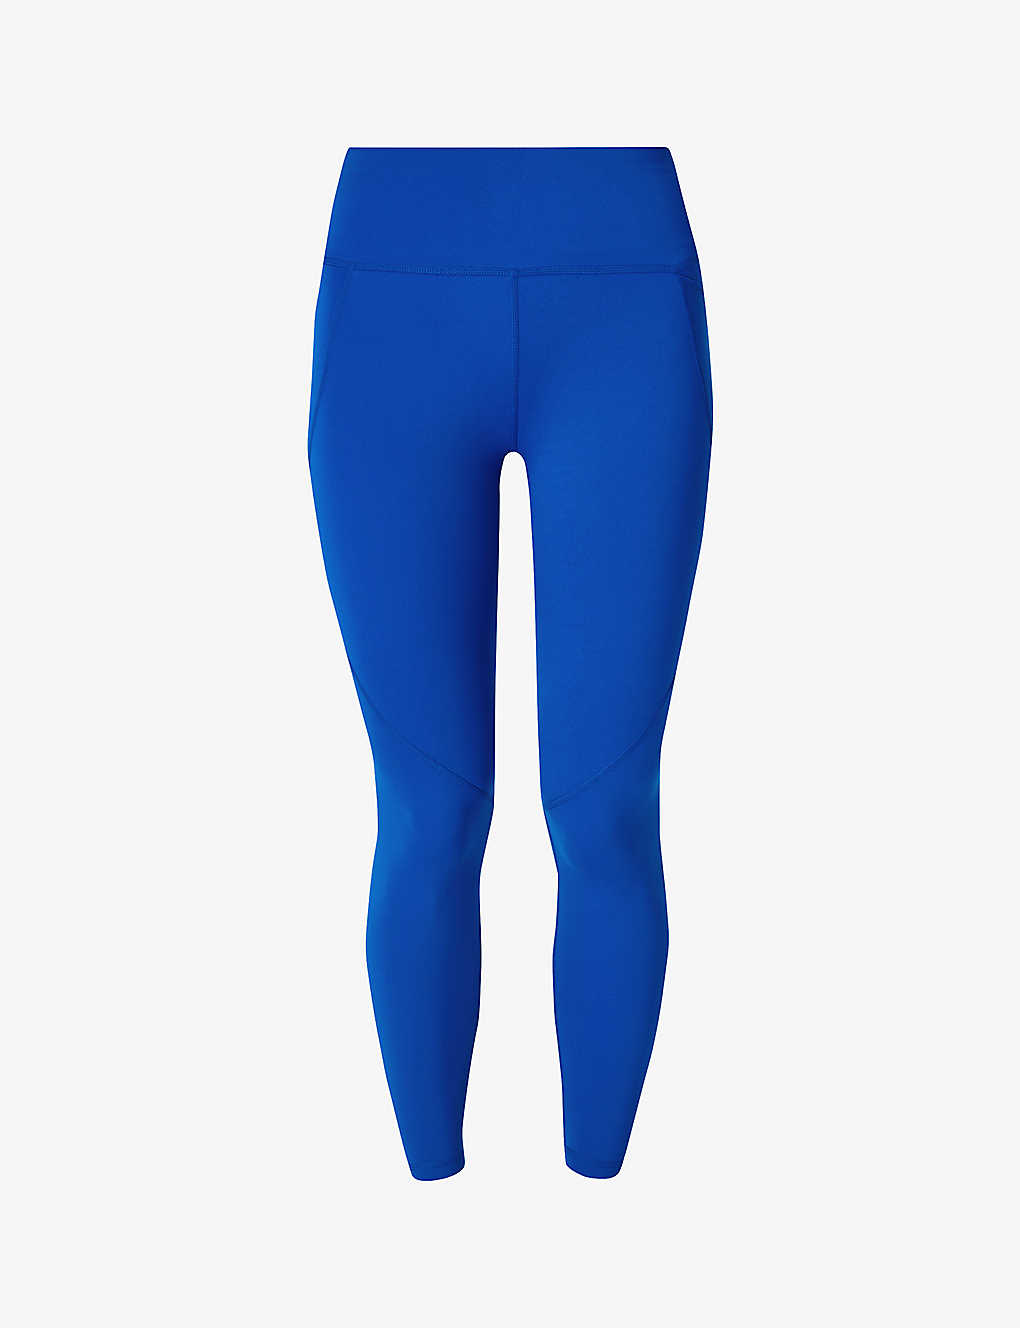 Shop Sweaty Betty Women's Lightning Blue Power 7/8 Workout Stretch-jersey Leggings